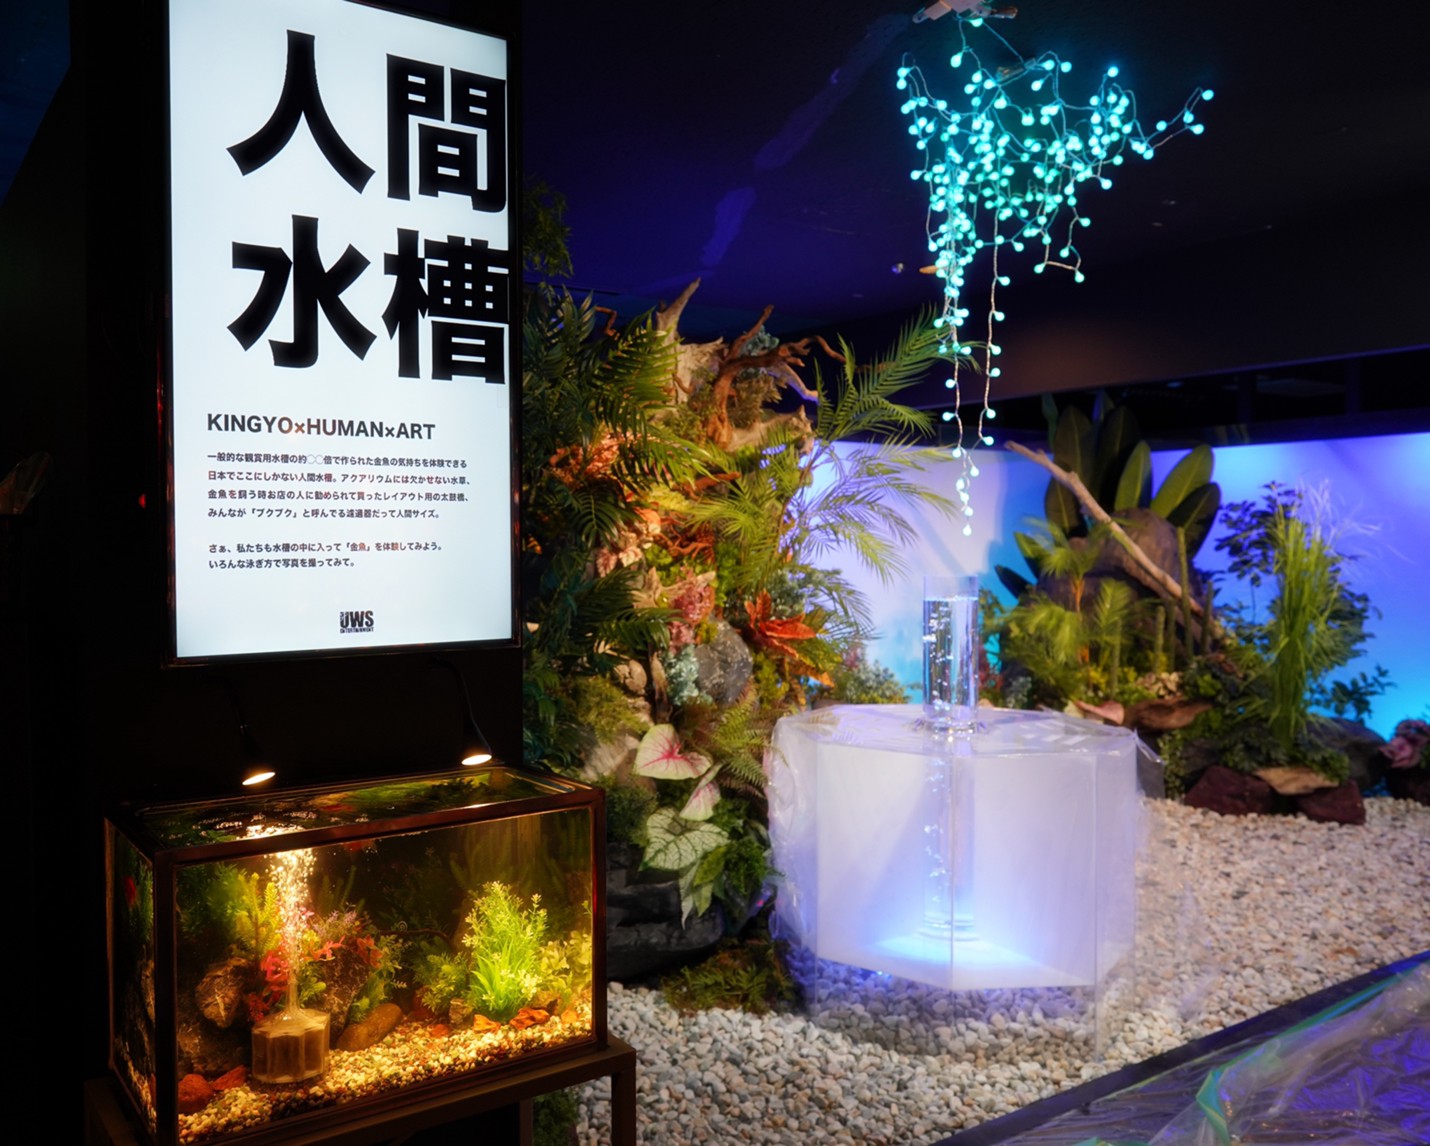 金魚のテーマパーク 奈良県奈良市 金魚ミュージアム が 学び 体験 地方創生 をコンセプトとした4つの新エリアをオープン 株式会社uws Entertainmentのプレスリリース